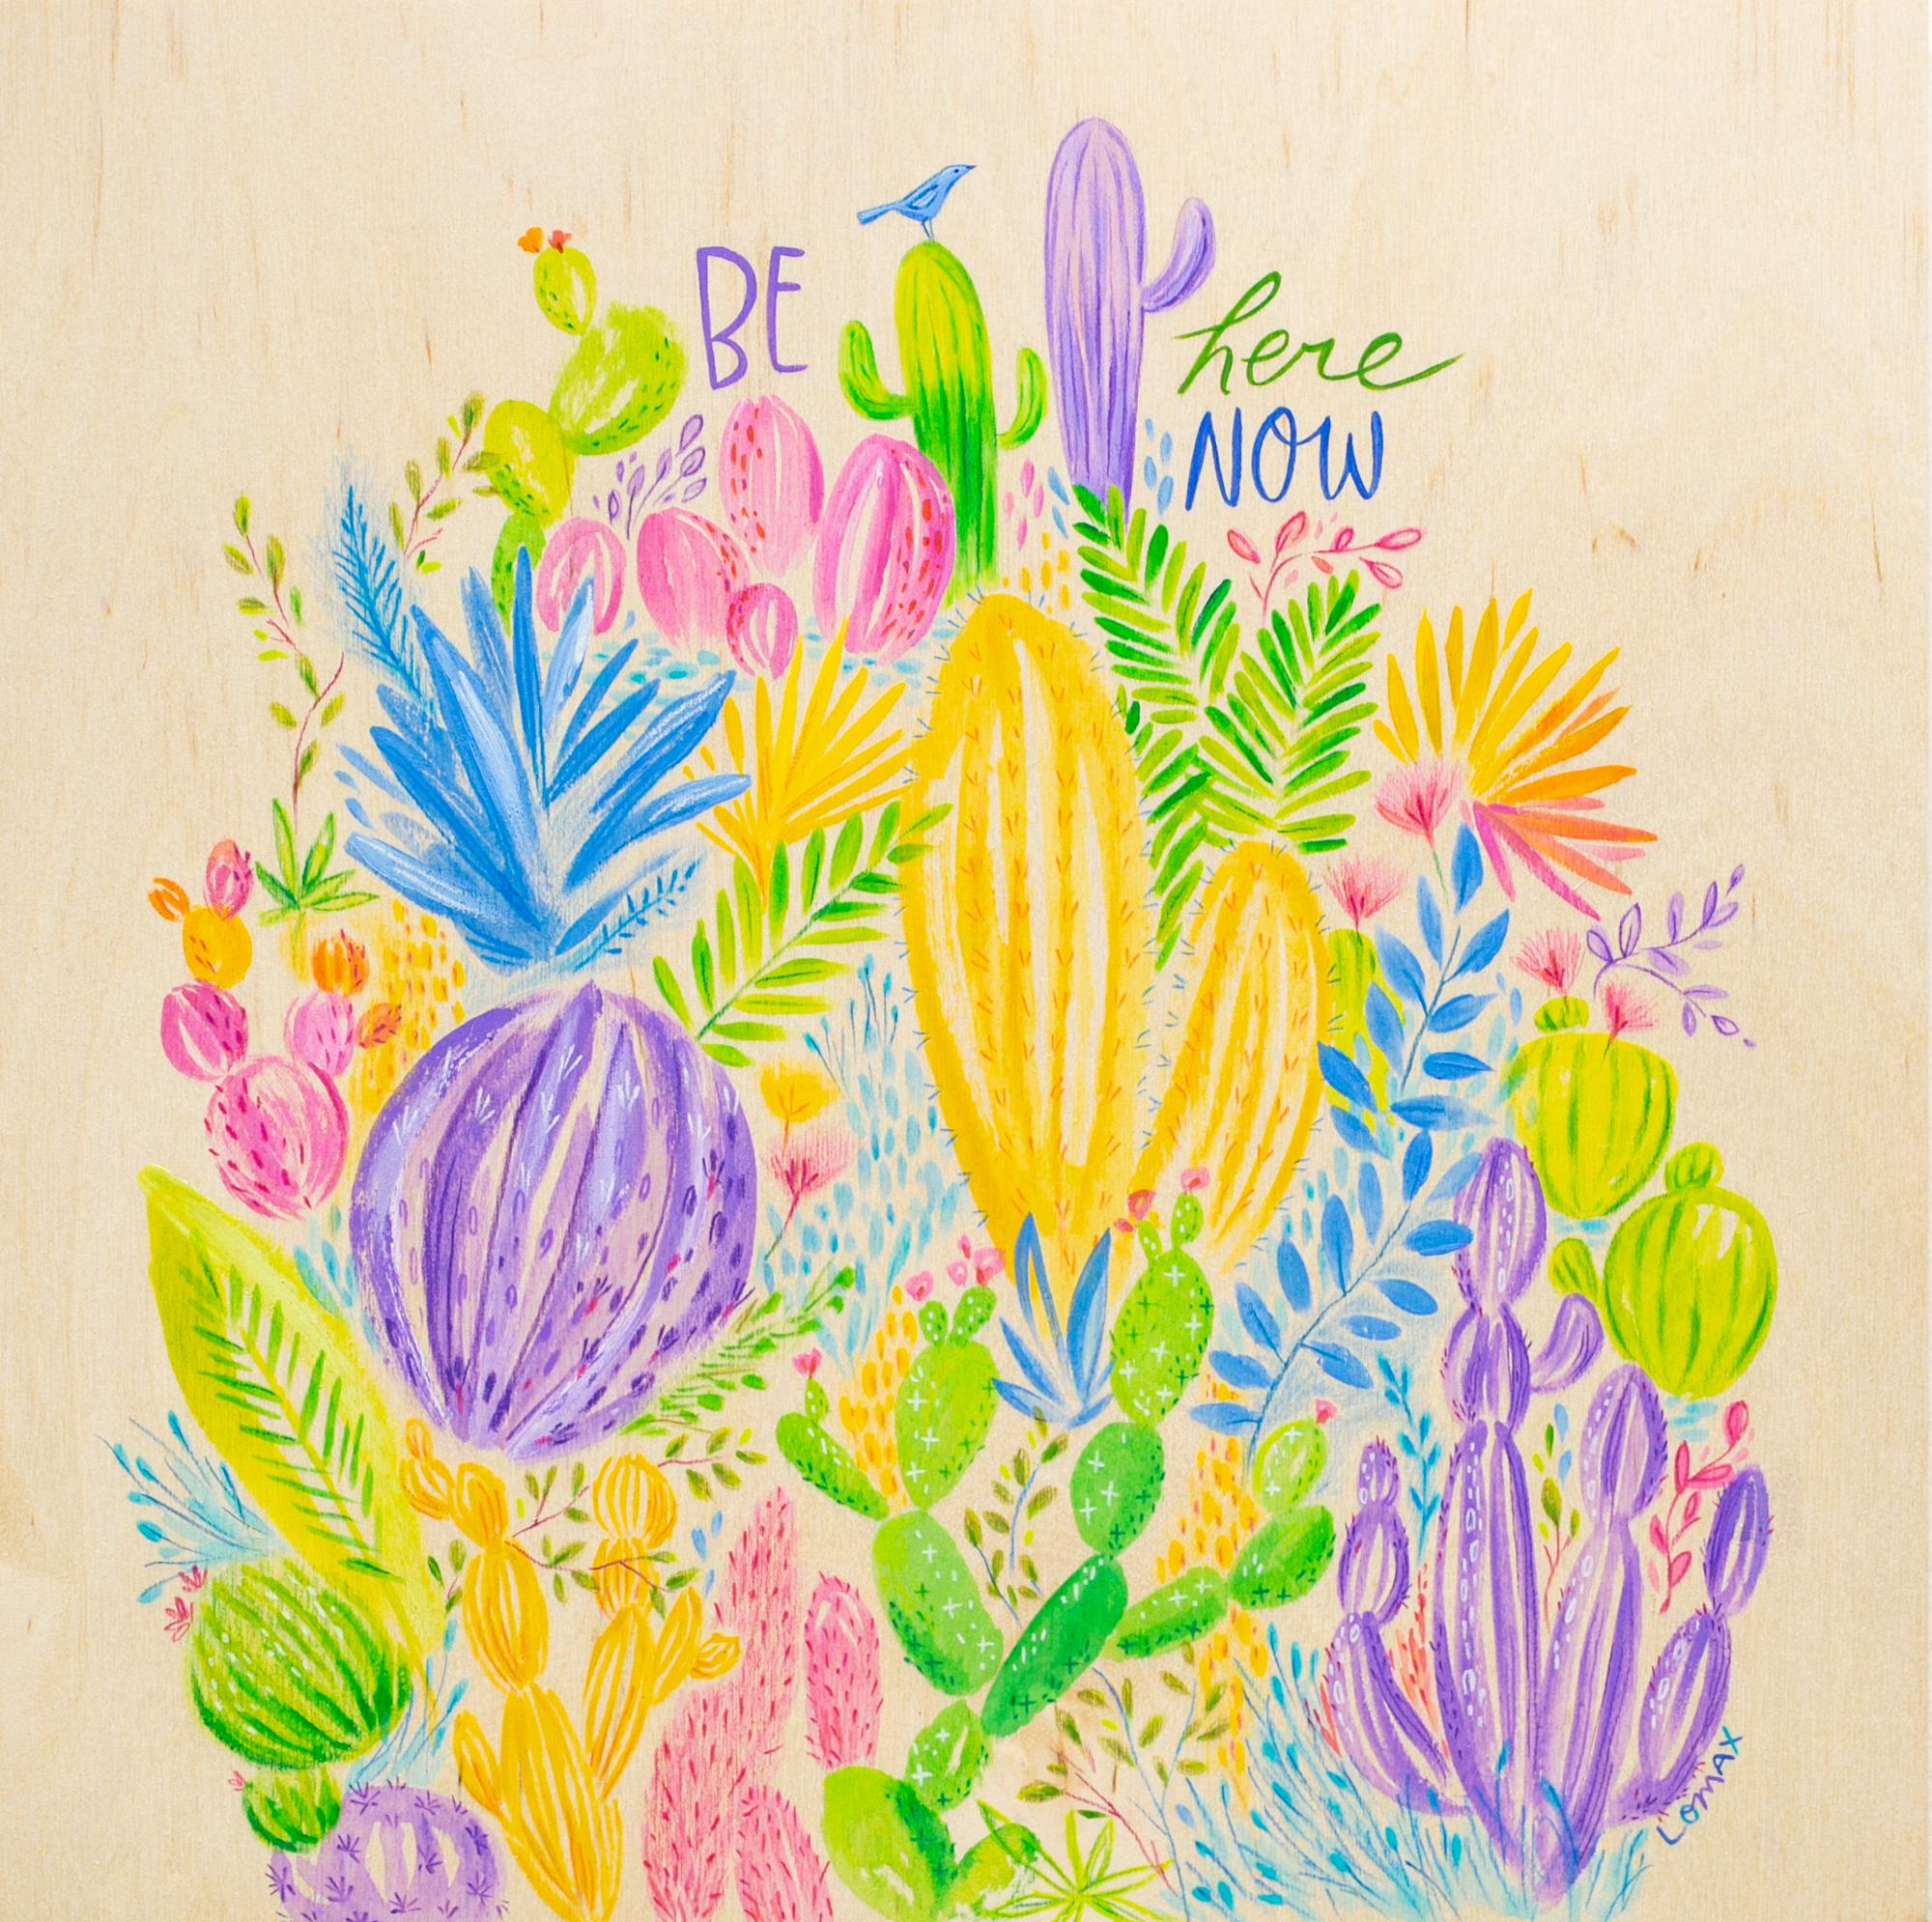 « Be Here Now », peinture florale, texte, bois exposé, couleurs vives et vives